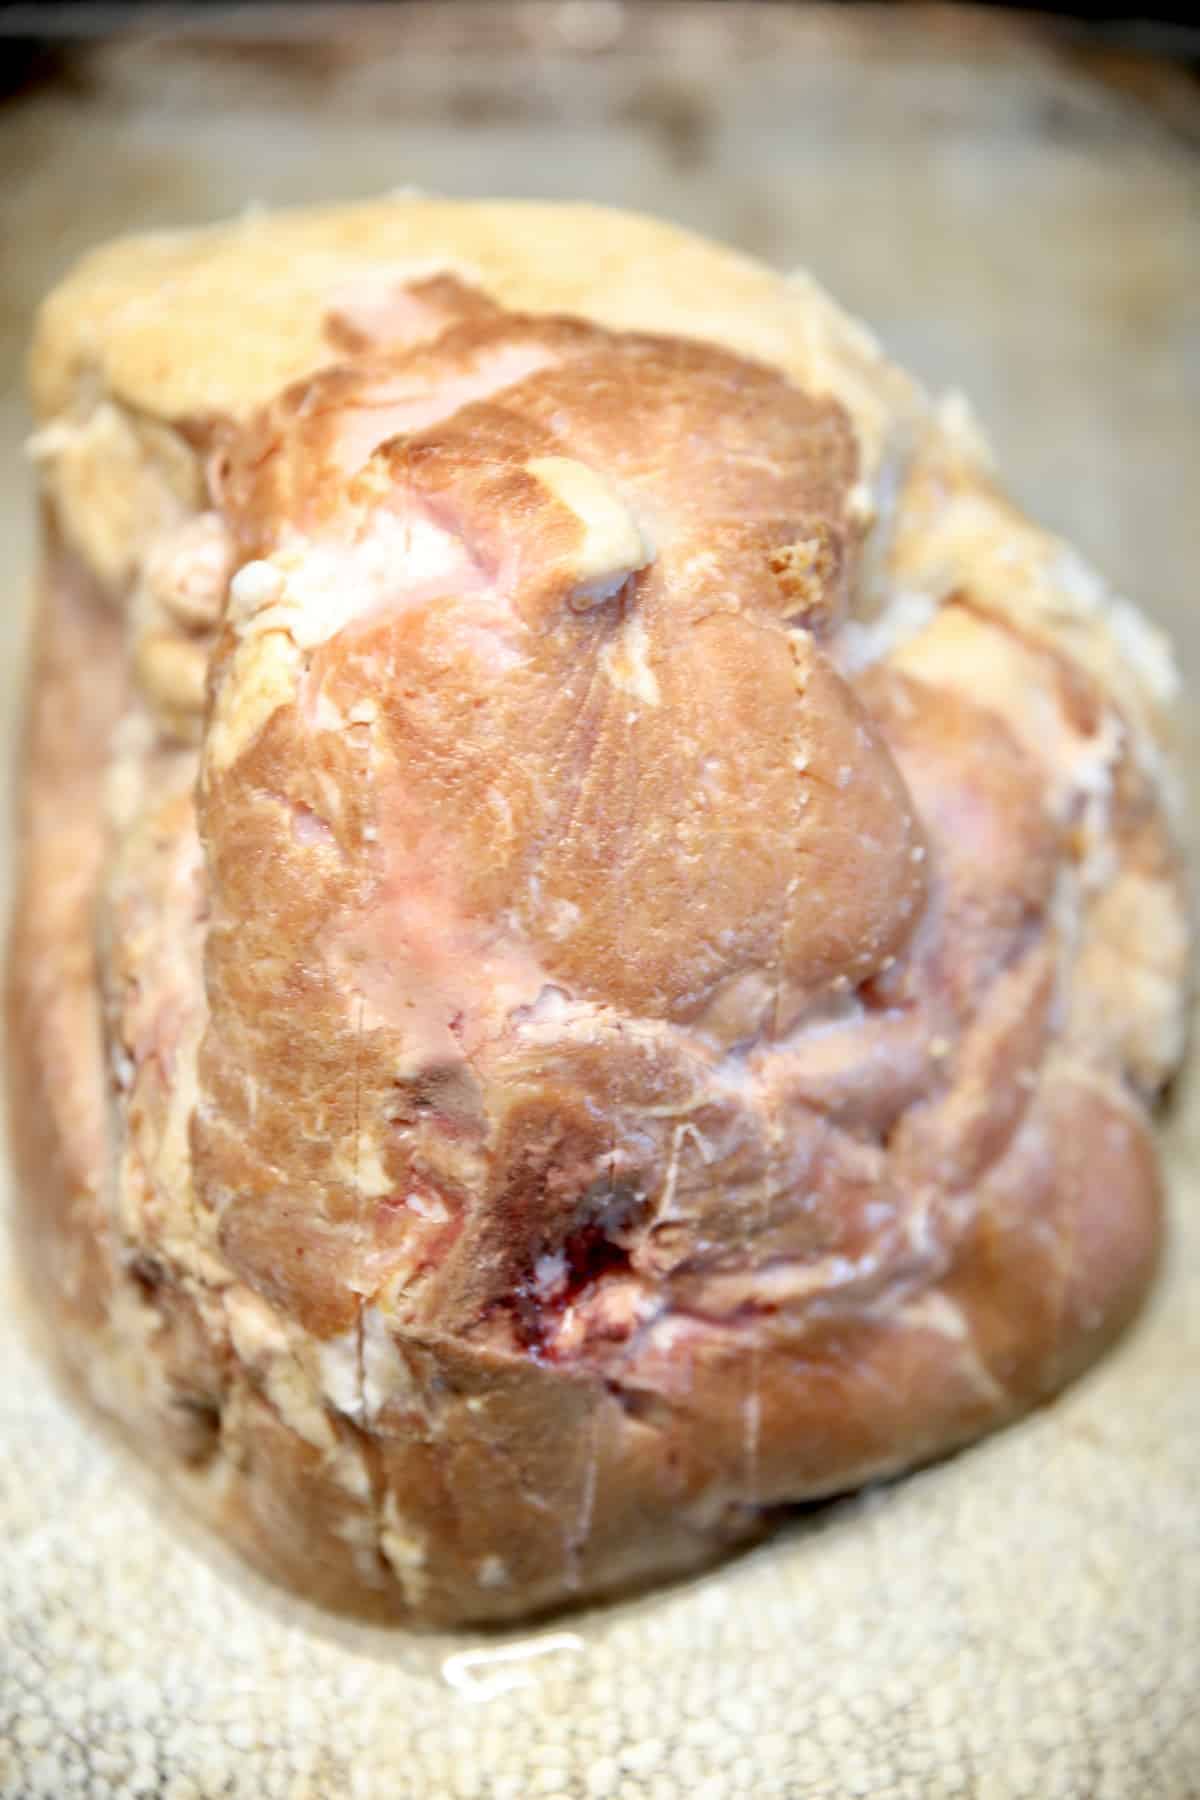 Half ham on a baking sheet, scored in a crosshatch pattern.